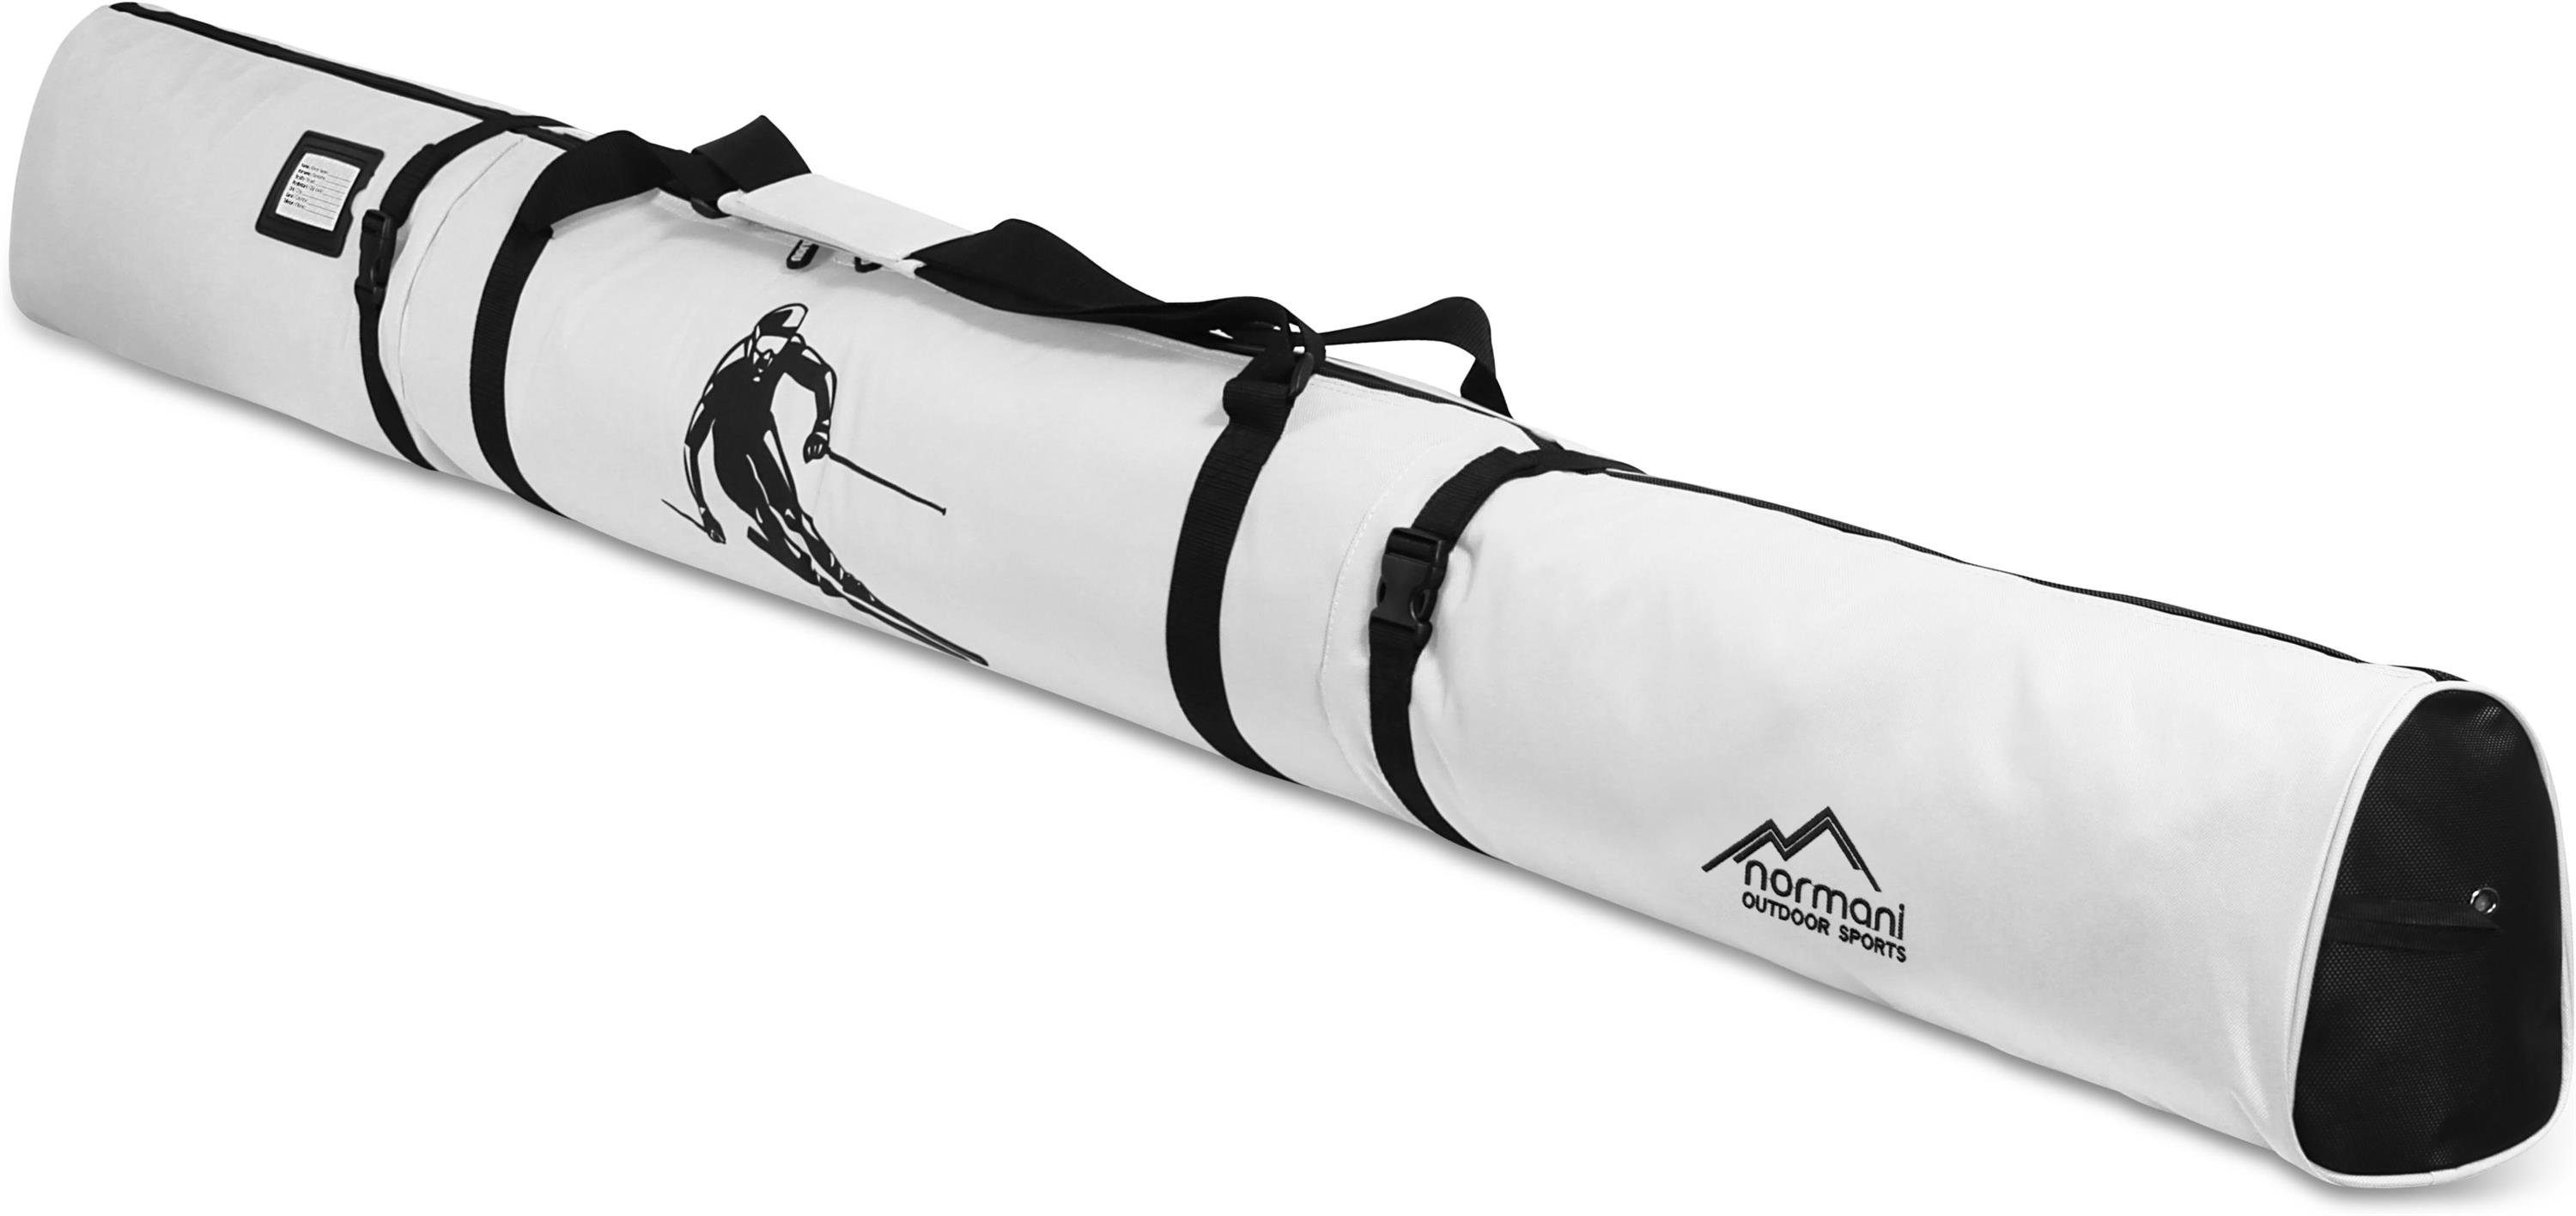 normani Sporttasche Skitasche Alpine Run 170, Skitasche für Skier und Skistöcke Skihülle Transporttasche Aufbewahrungstasche Weiß